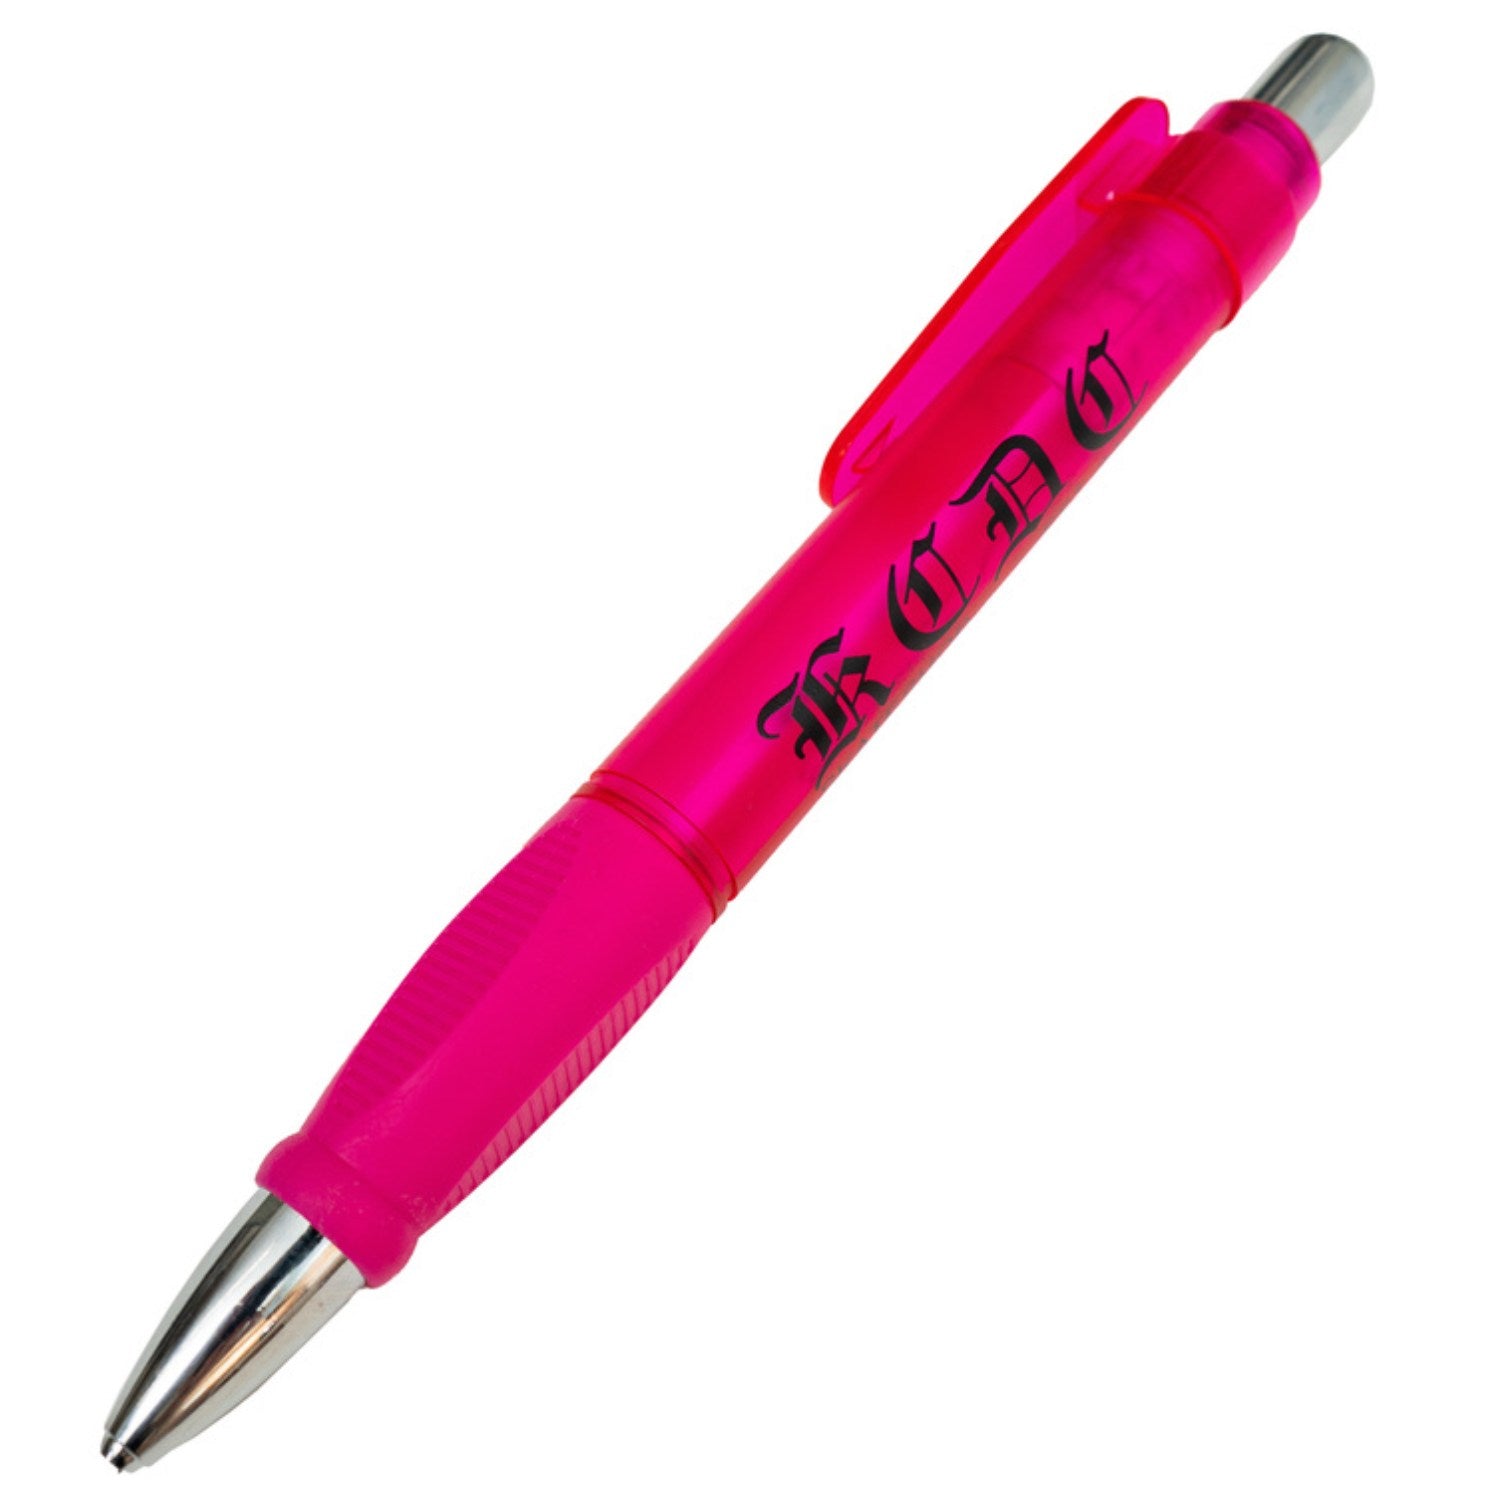 KCDC Jumbo Pen - Pink